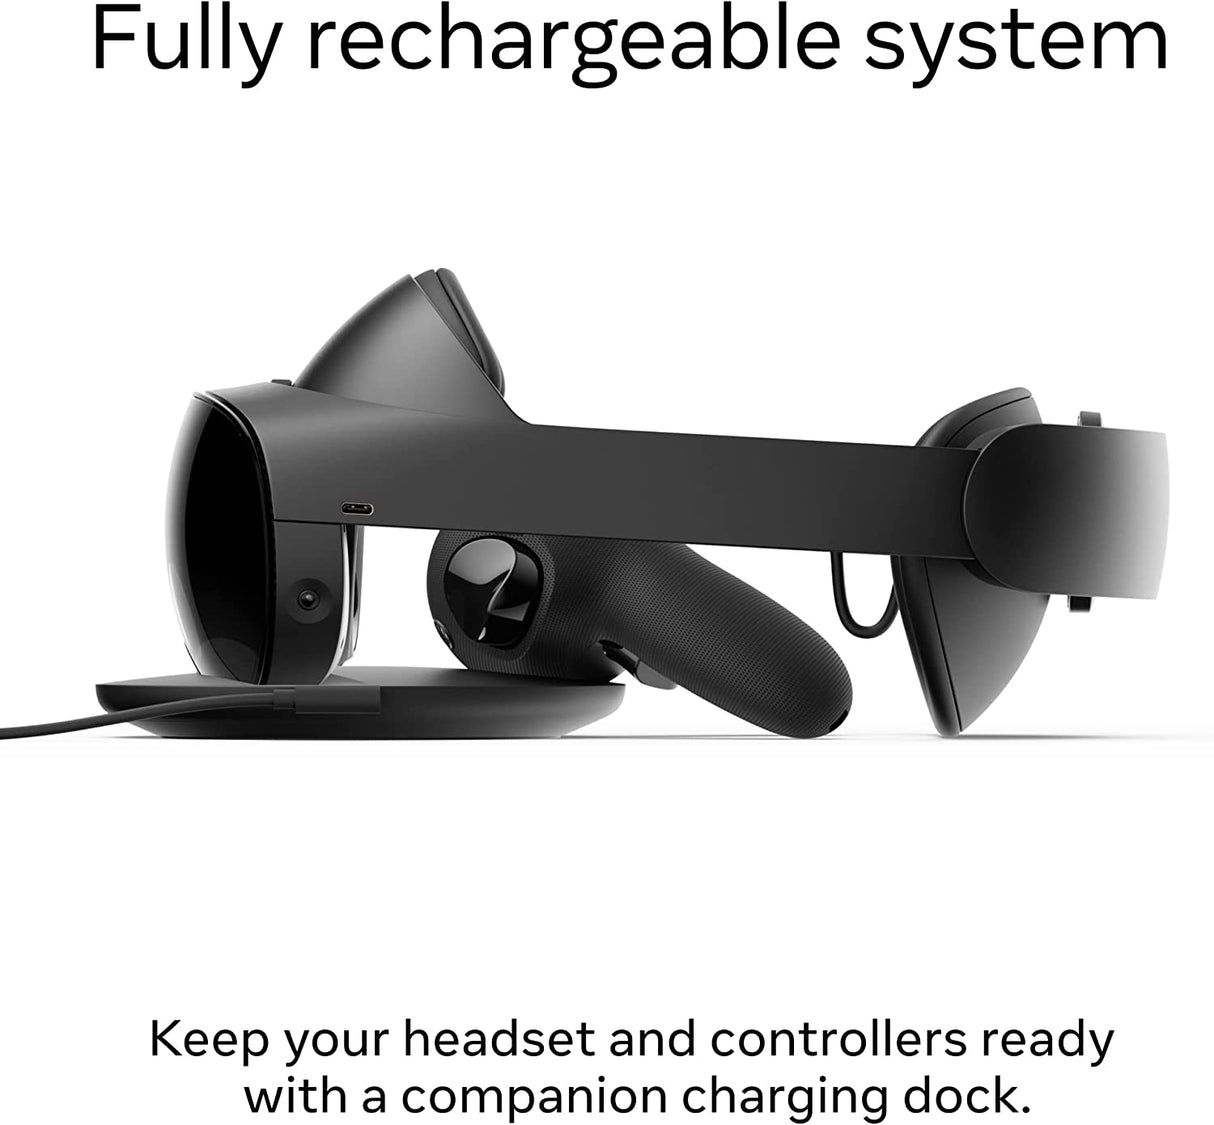 Meta Quest Pro VR Óculos de Realidade Virtual